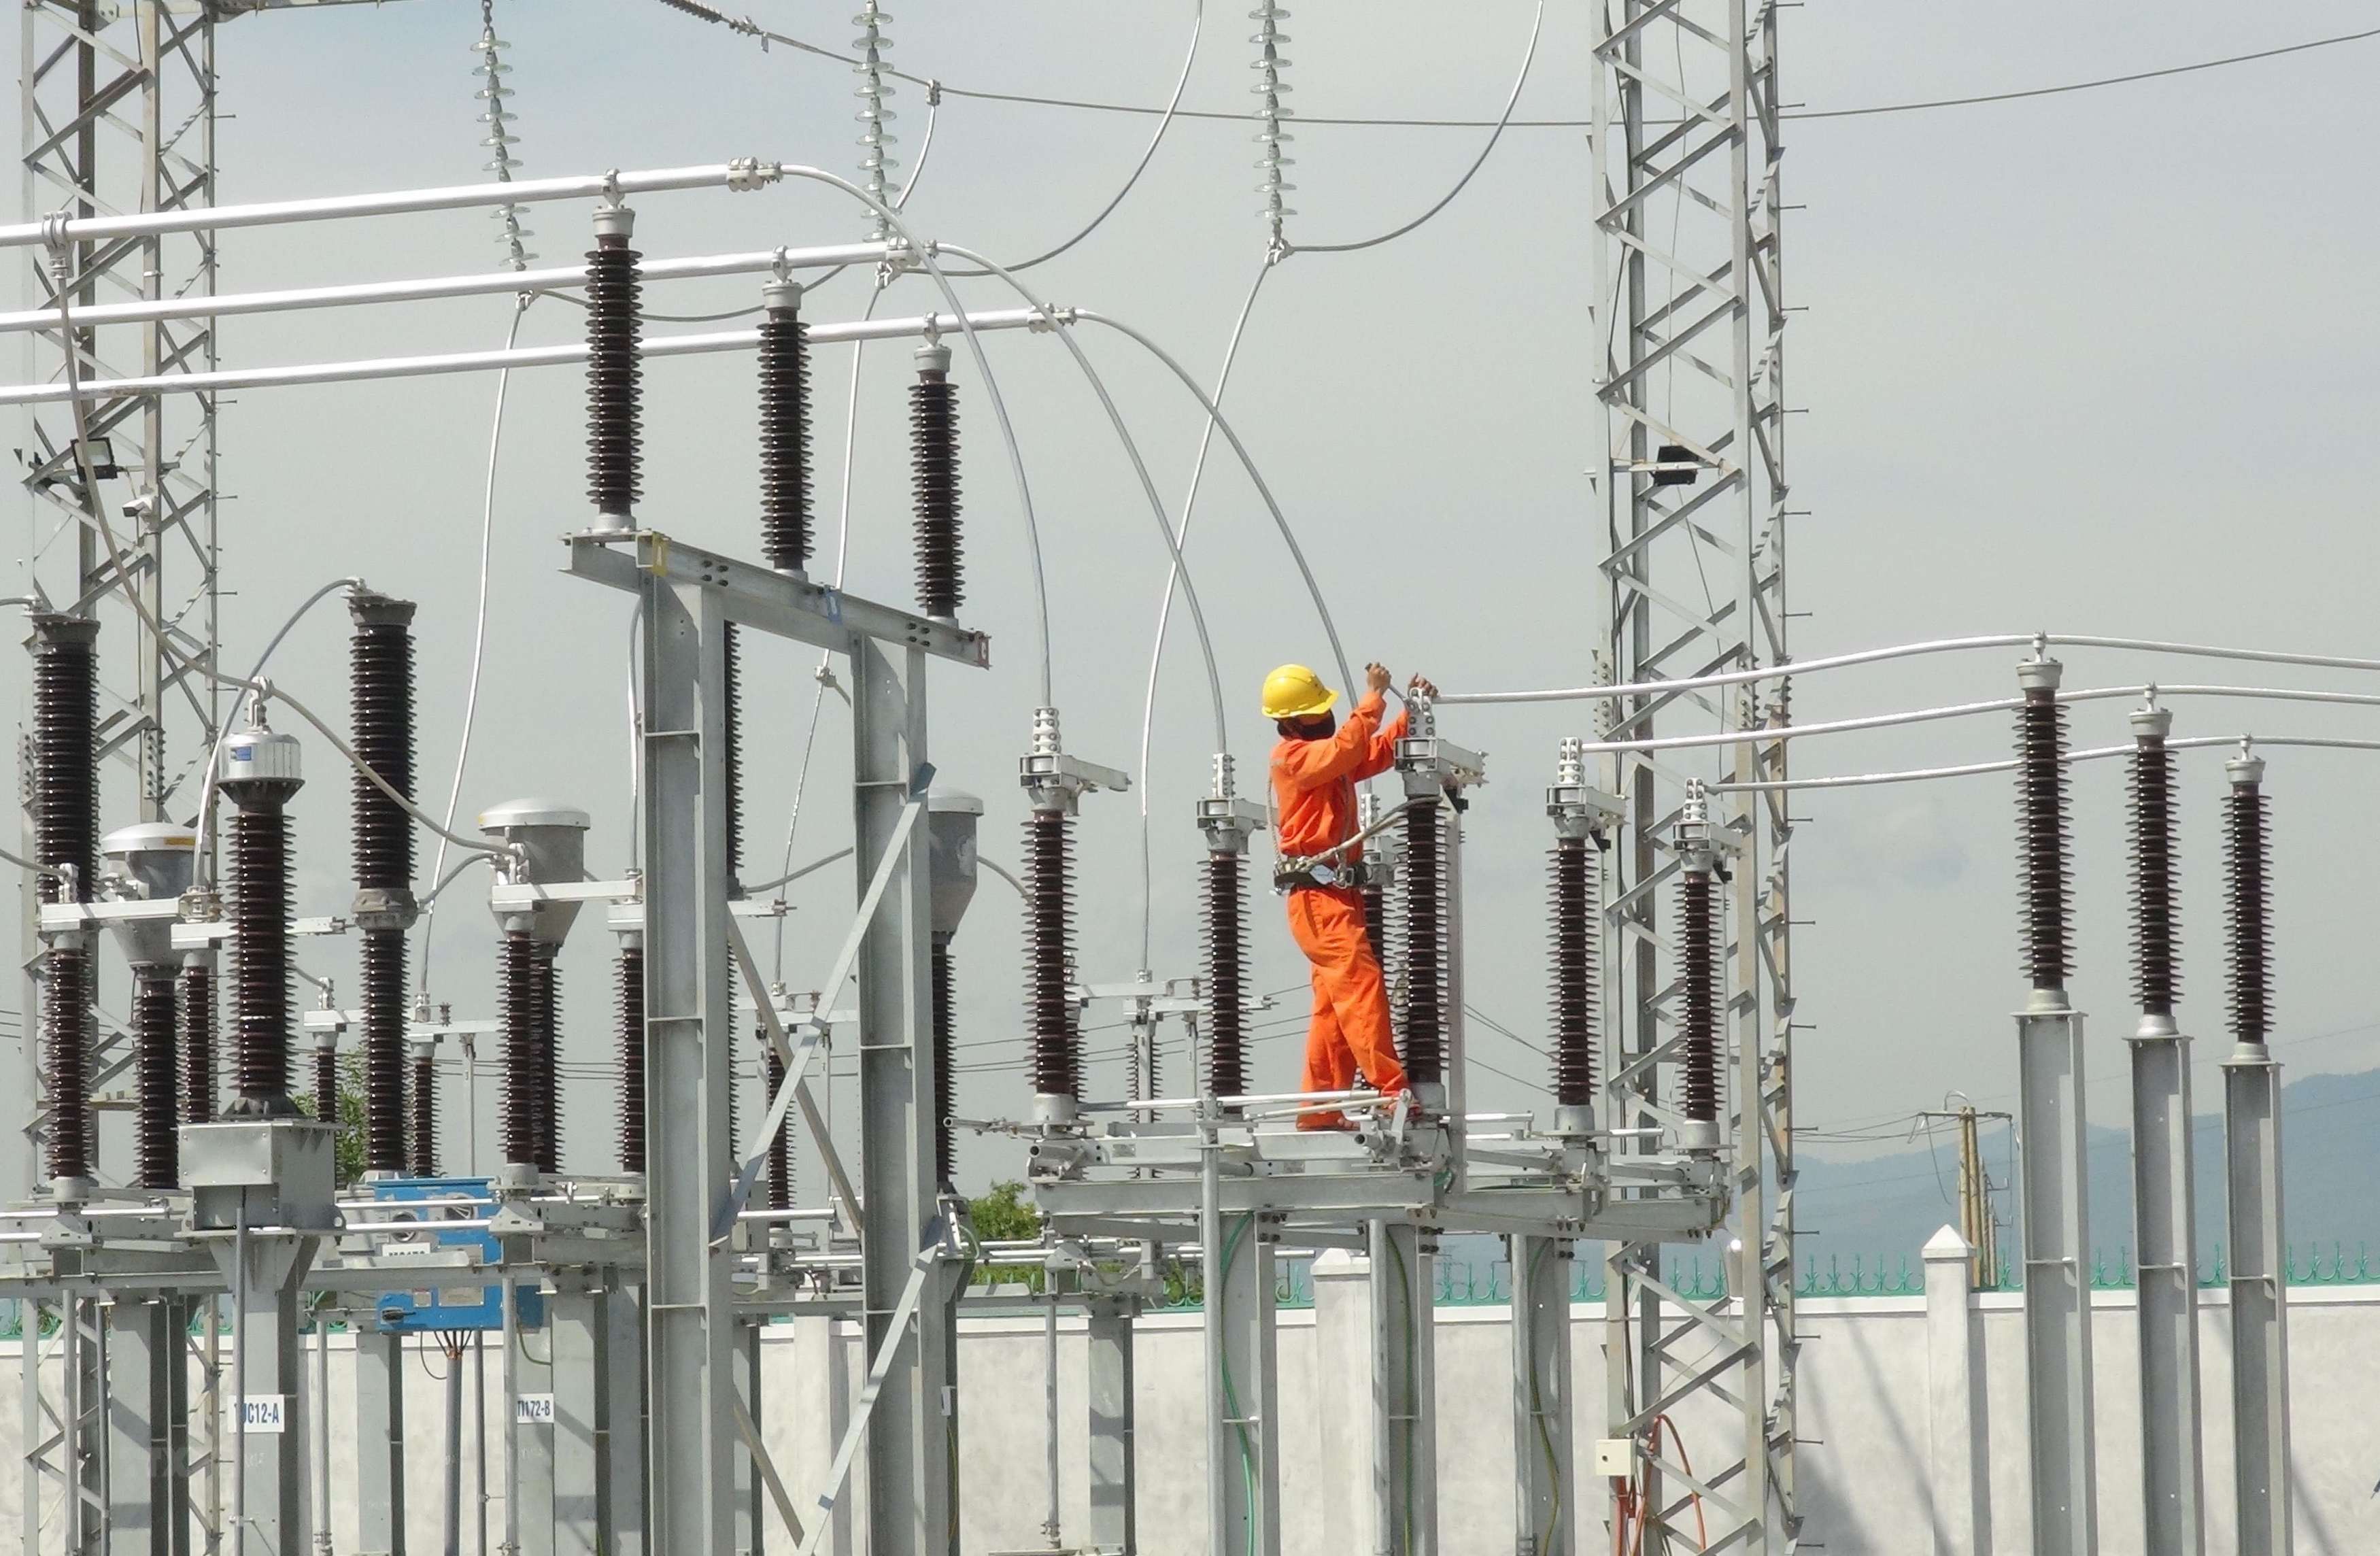 Đề án phát triển lưới điện thông minh tại Việt Nam giai đoạn 2023-2030, tầm nhìn 2045 vừa được Bộ Công Thương trình lên Chính phủ